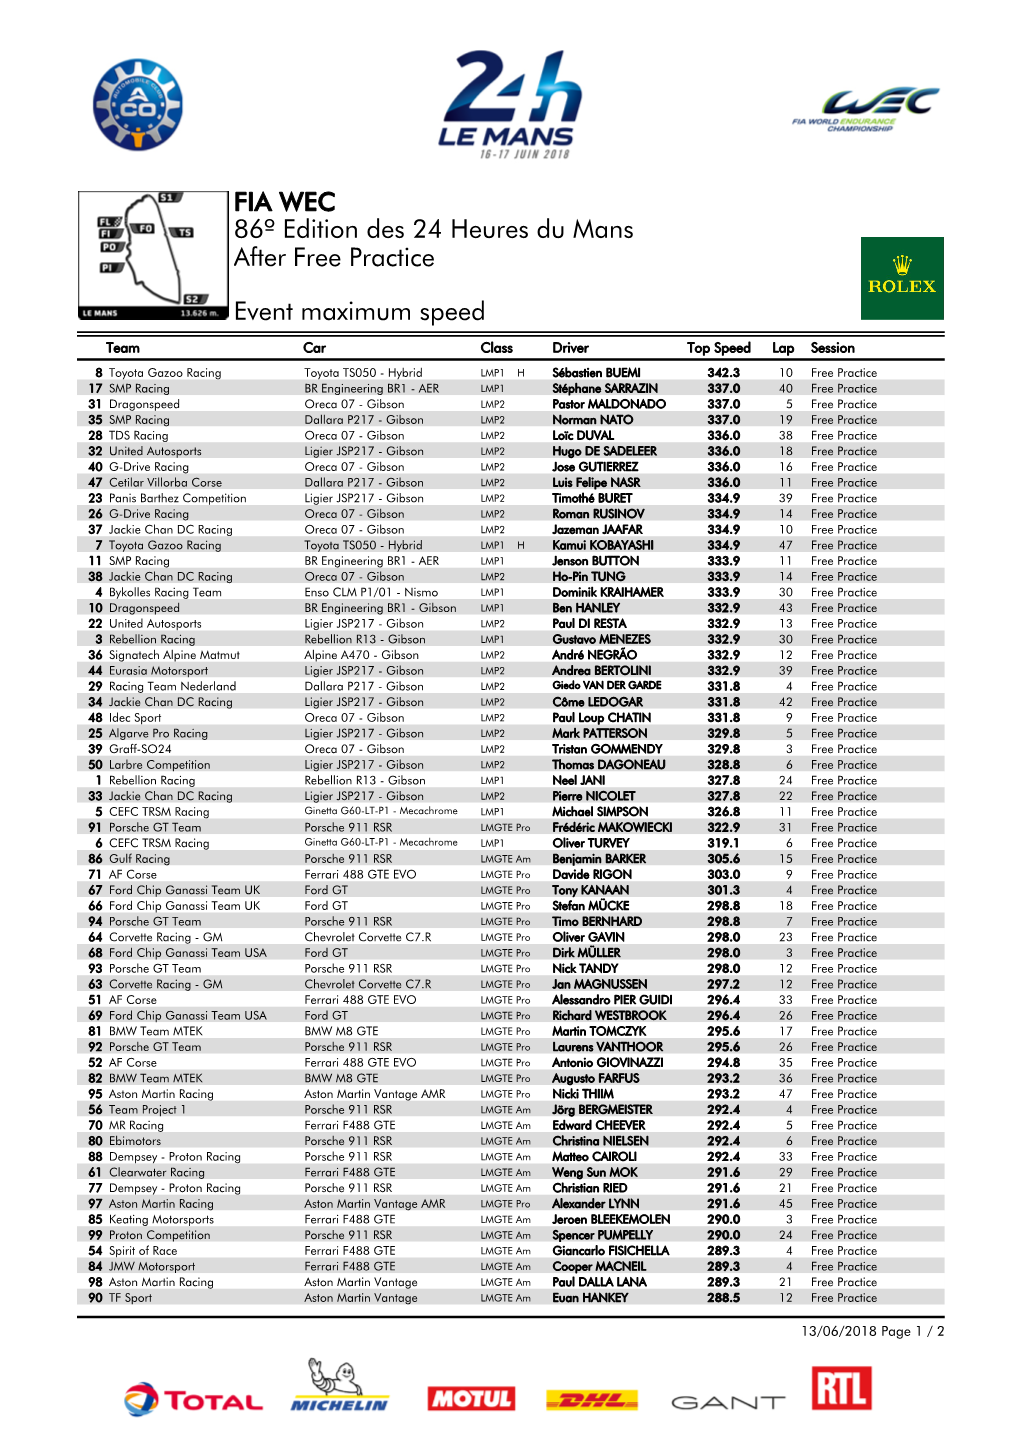 Event Maximum Speed Free Practice 86º Edition Des 24 Heures Du Mans